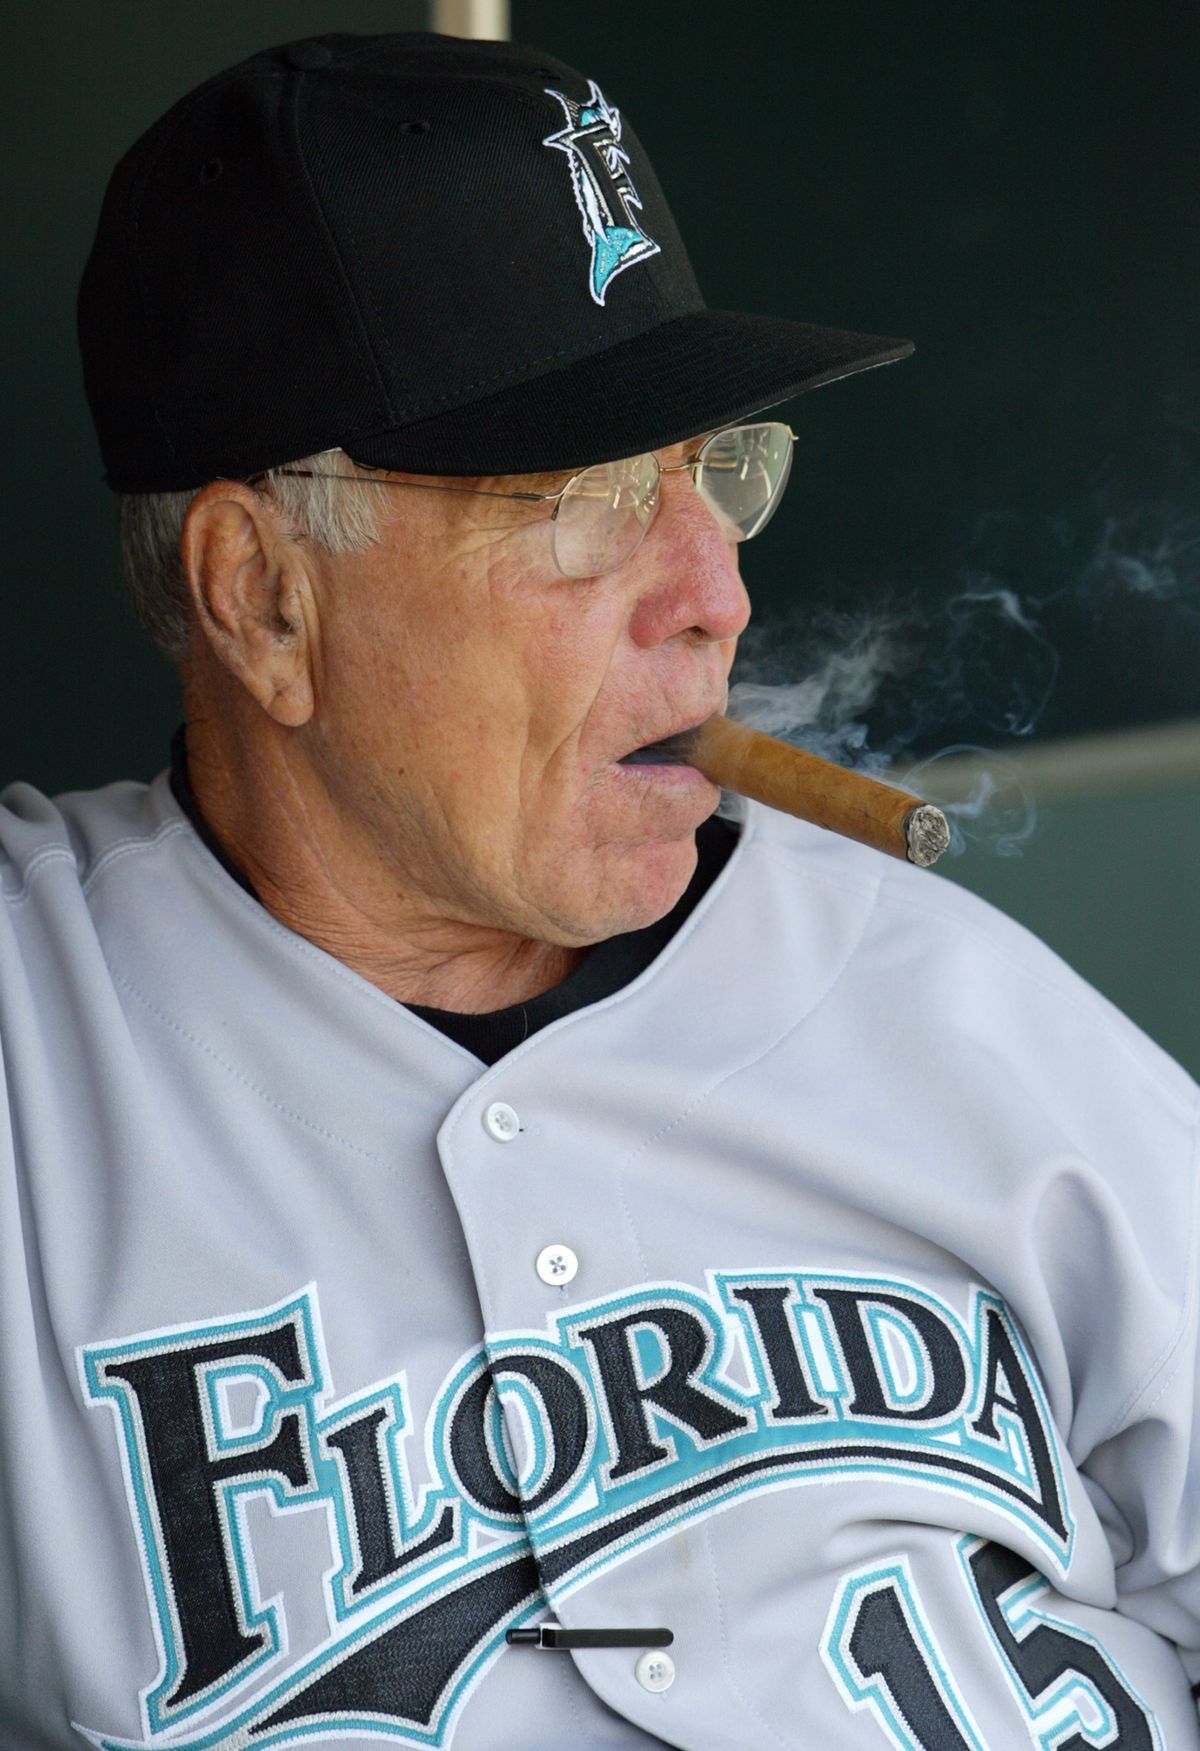 Jack McKeon #15 smokes a cigar